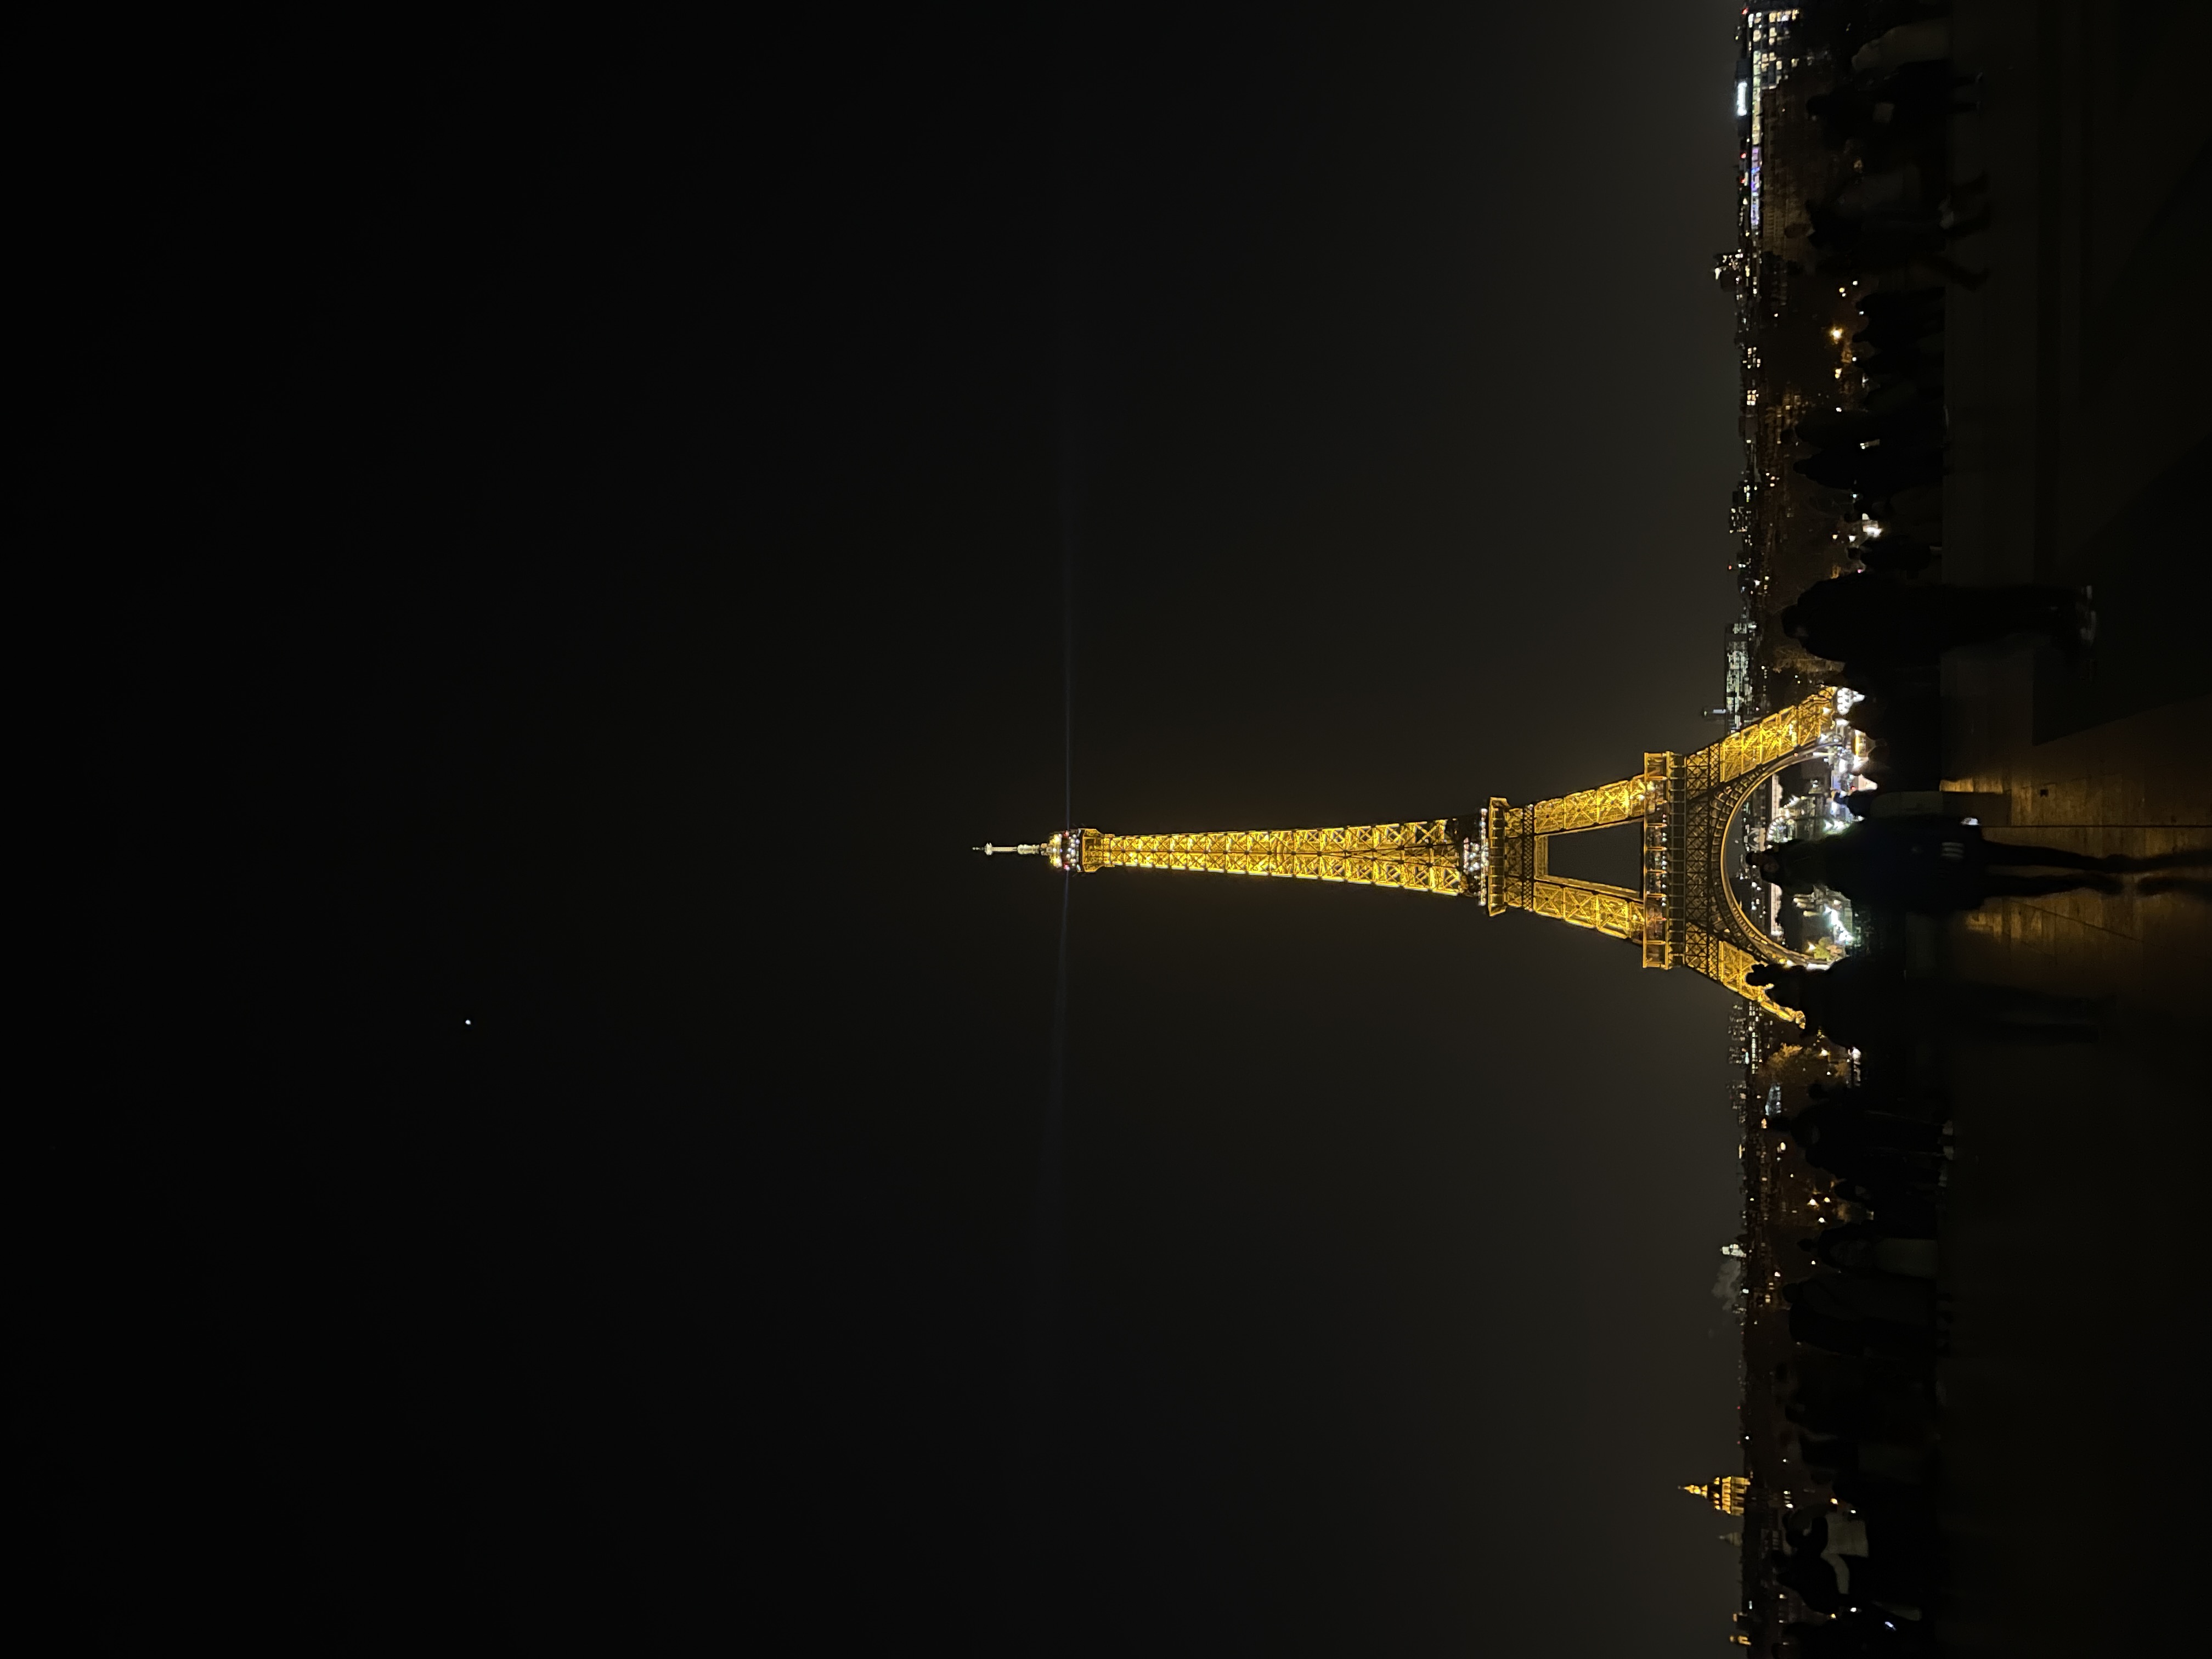 아직도 에펠탑이 예뻐 보인다. 당연히 야경이 좋아서 마음을 바꾼 건… 아님.